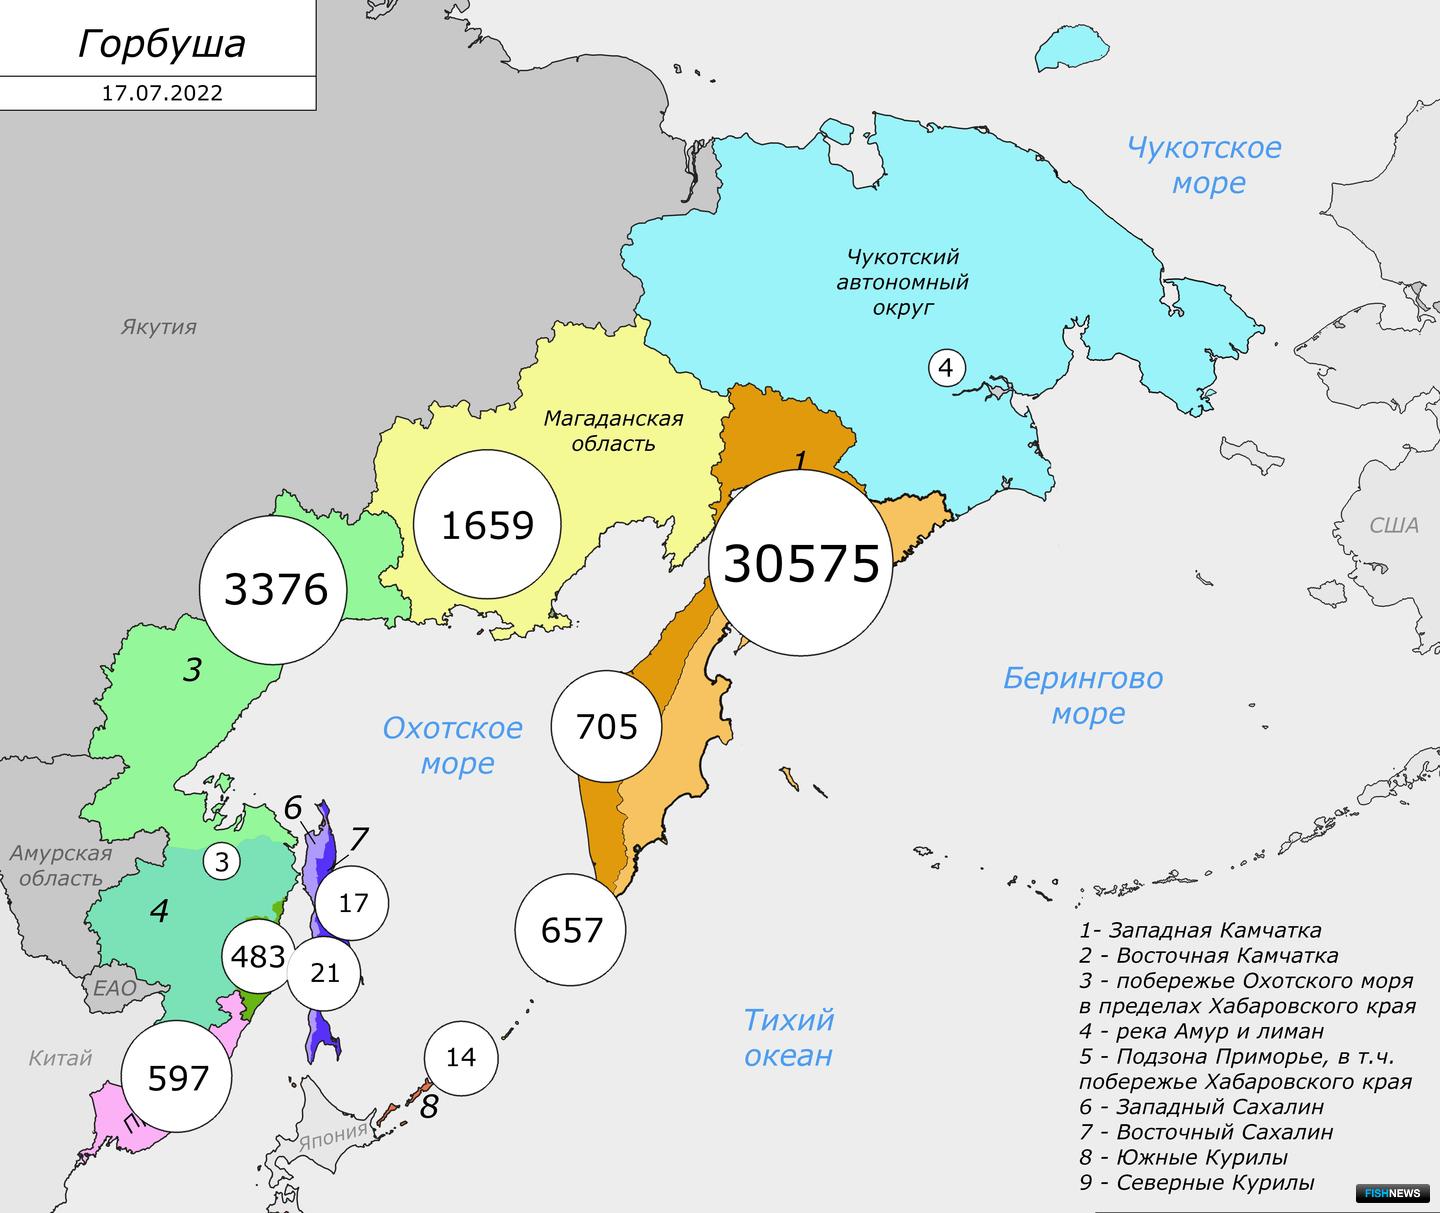 Вылов горбуши (тонны) в промысловых районах Дальнего Востока России по состоянию на 17 июля 2022 г.